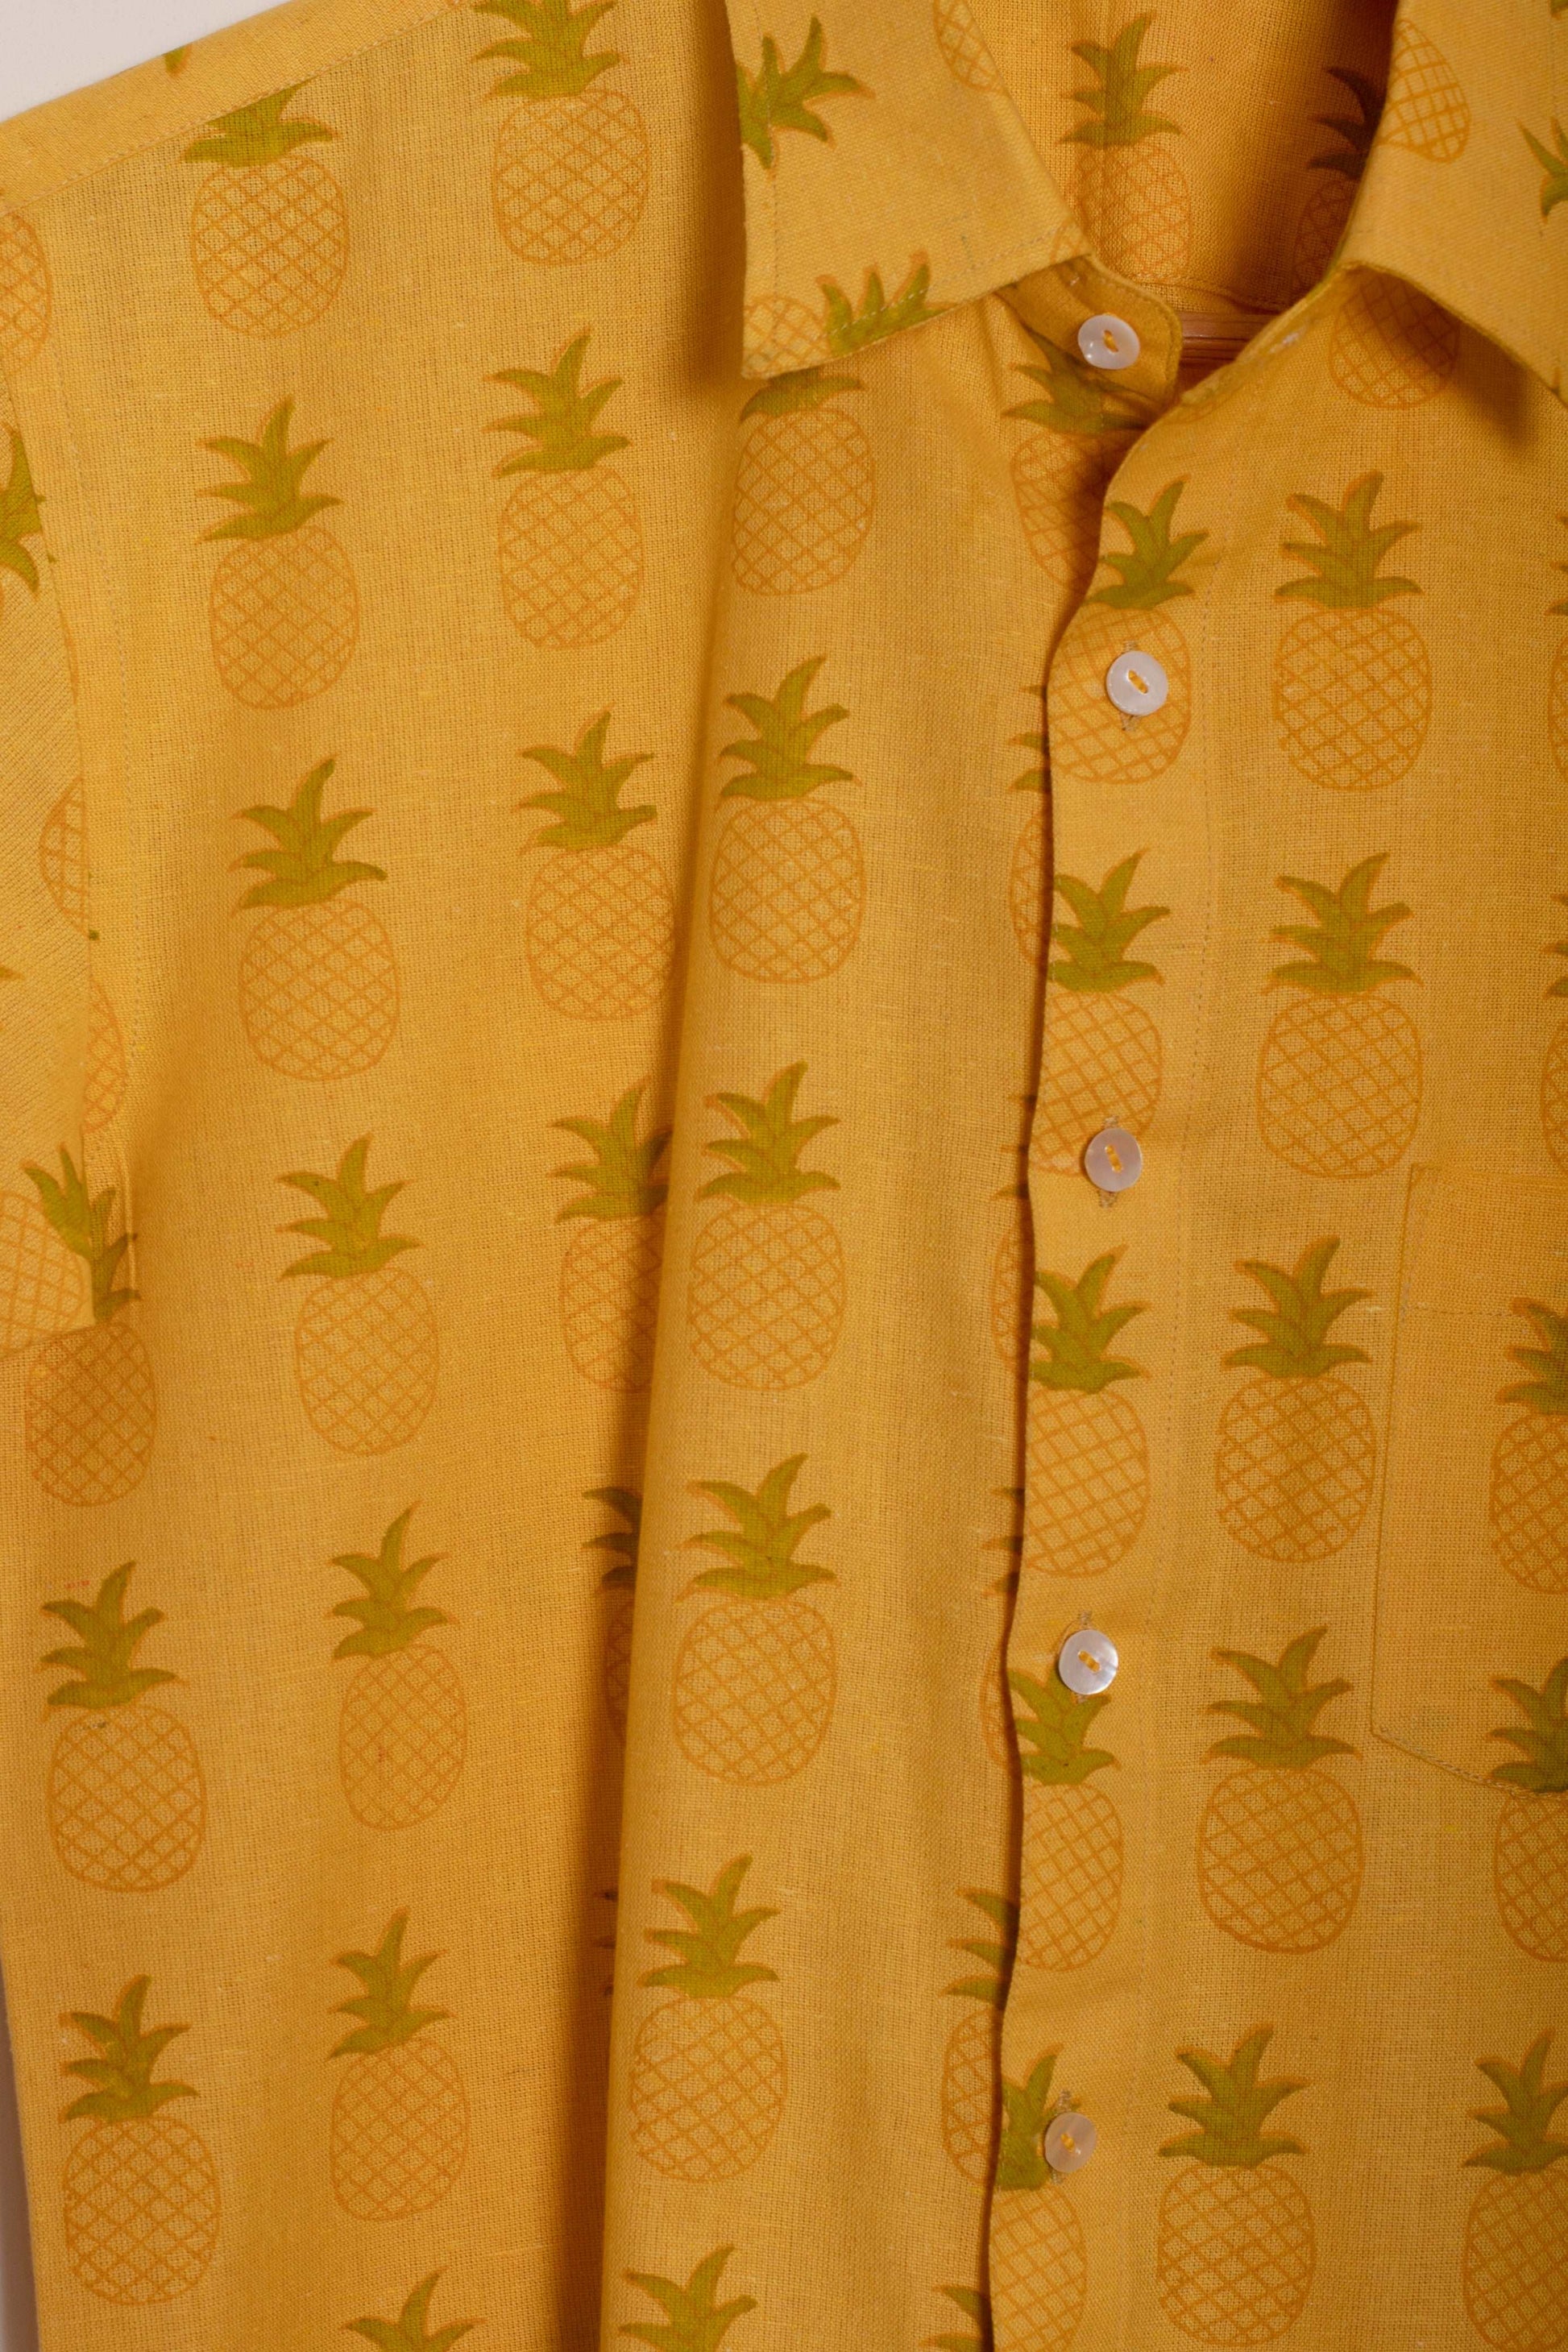 Citrus Pineapple Men's Shirt